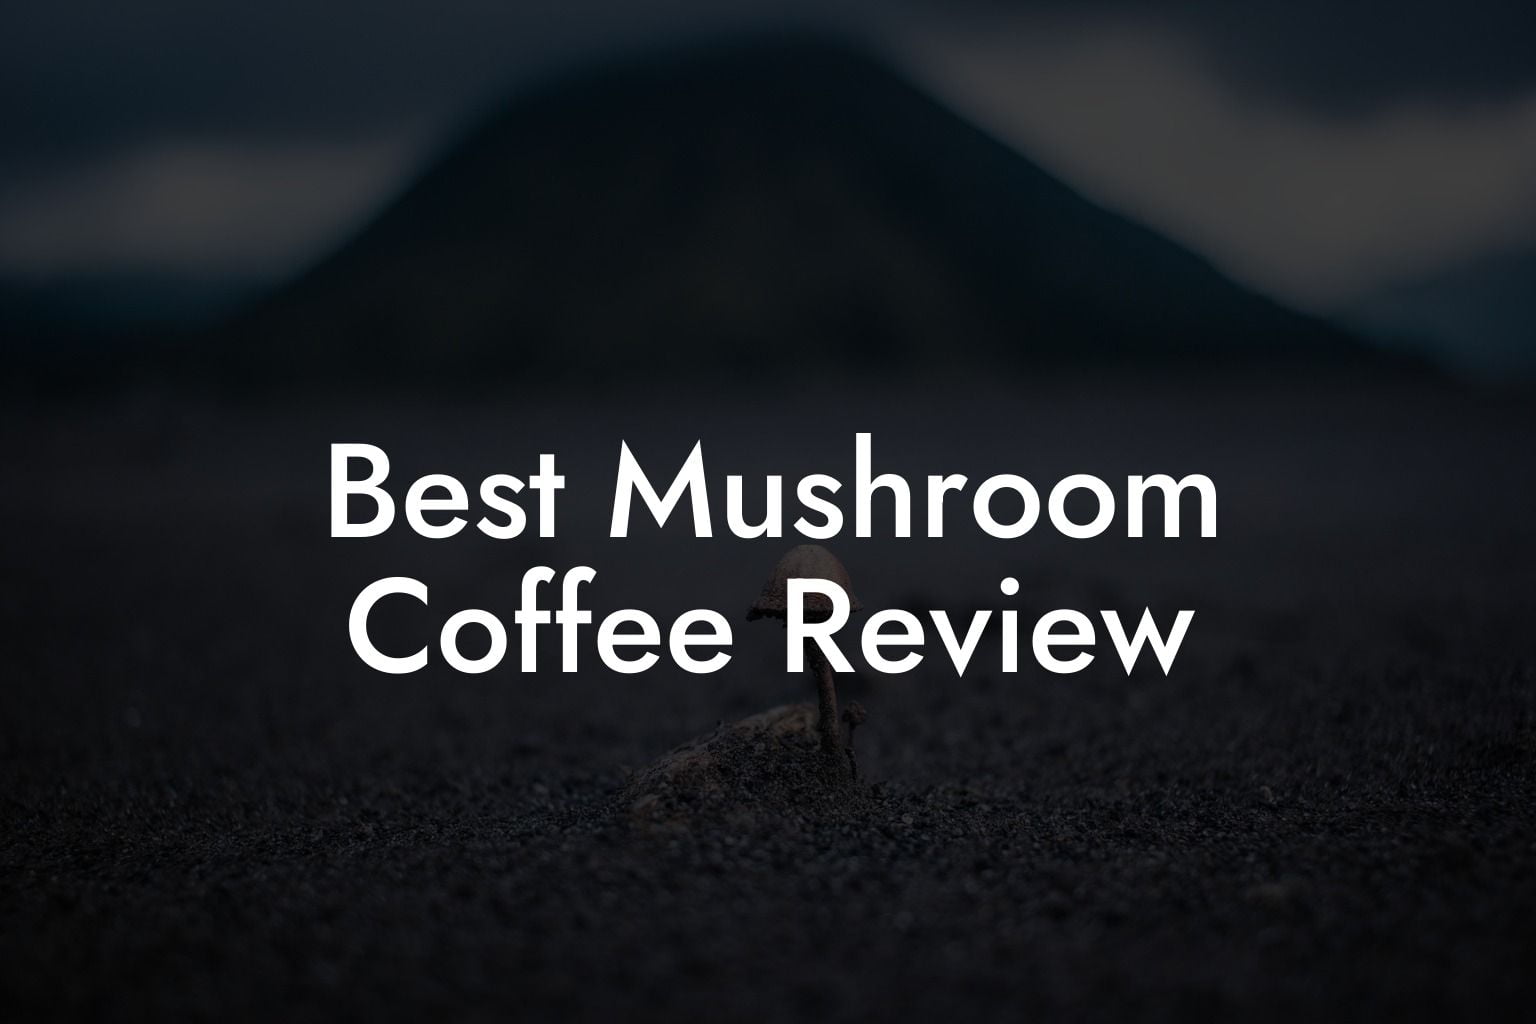 Best Mushroom Coffee Review